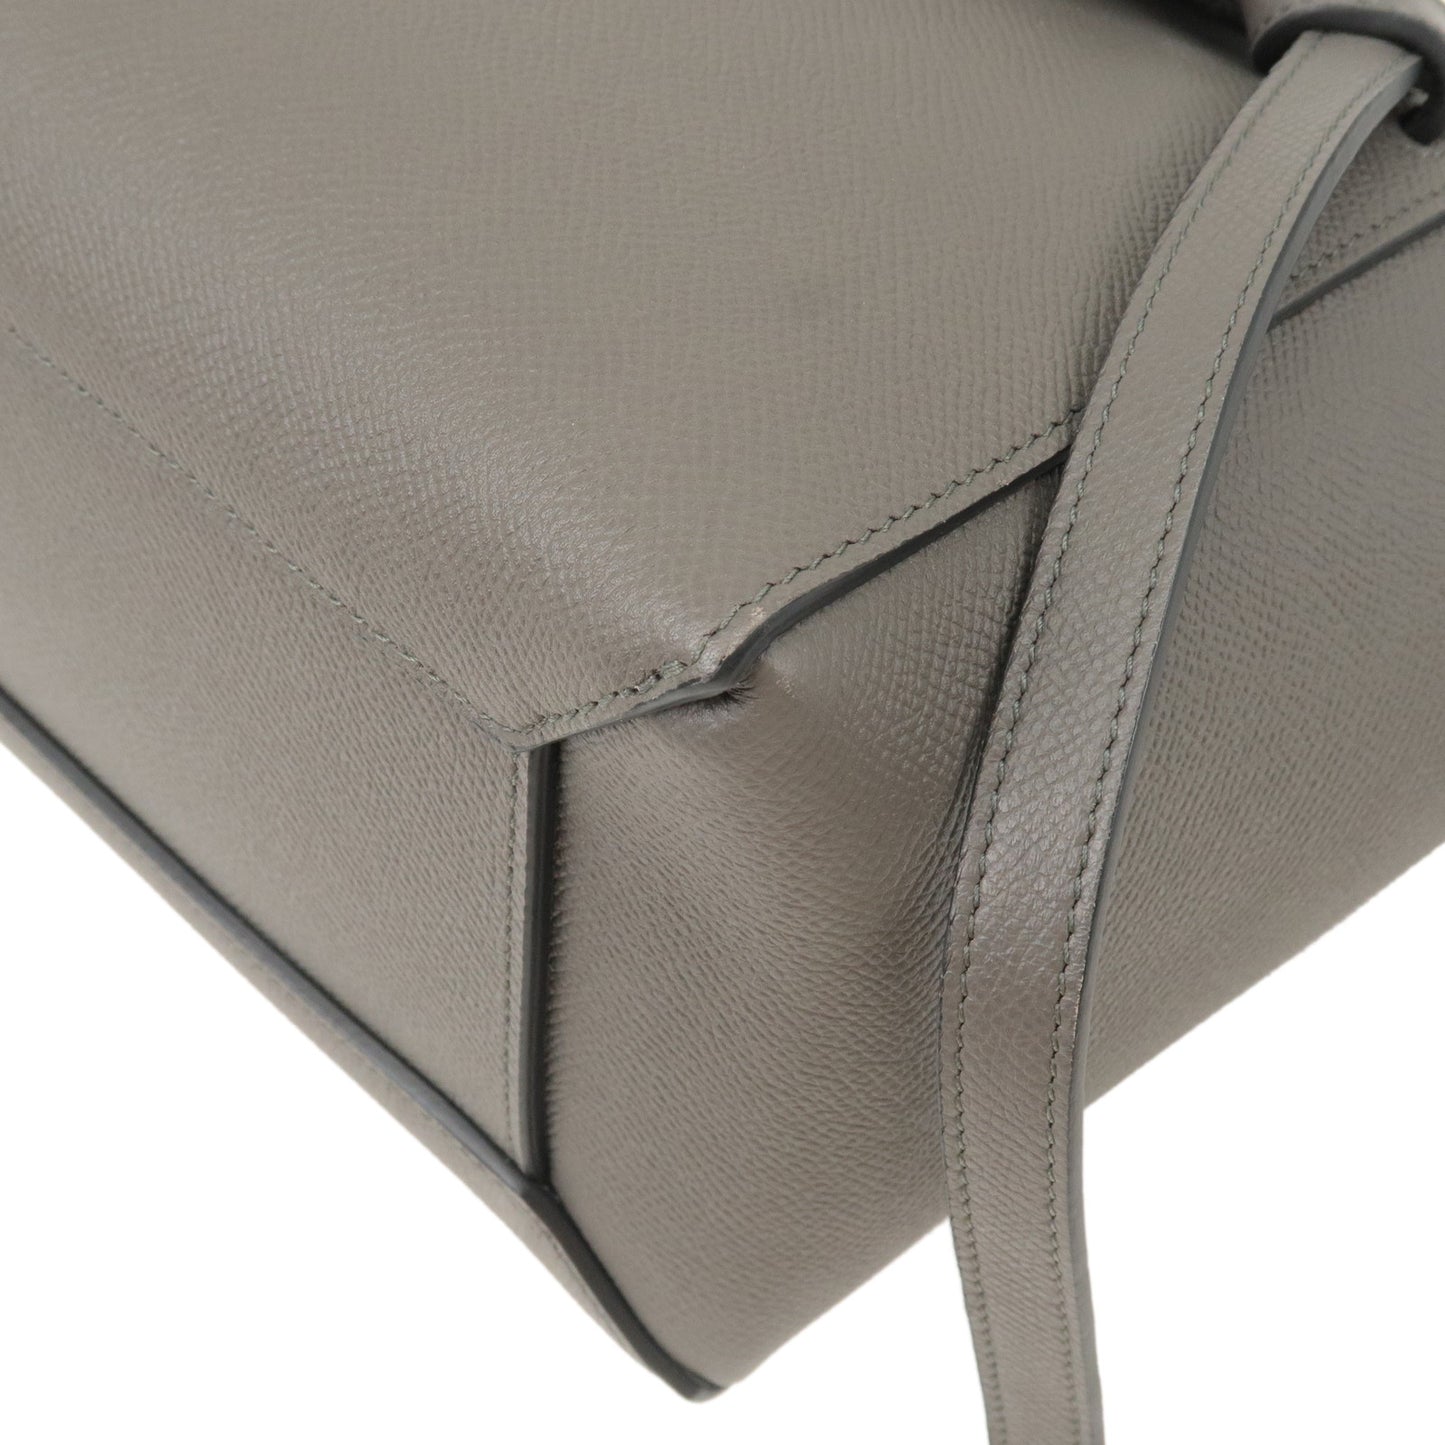 CELINE Leather Belt Bag Micro 2Way Bag Hand Bag Shoulder Bag Gray